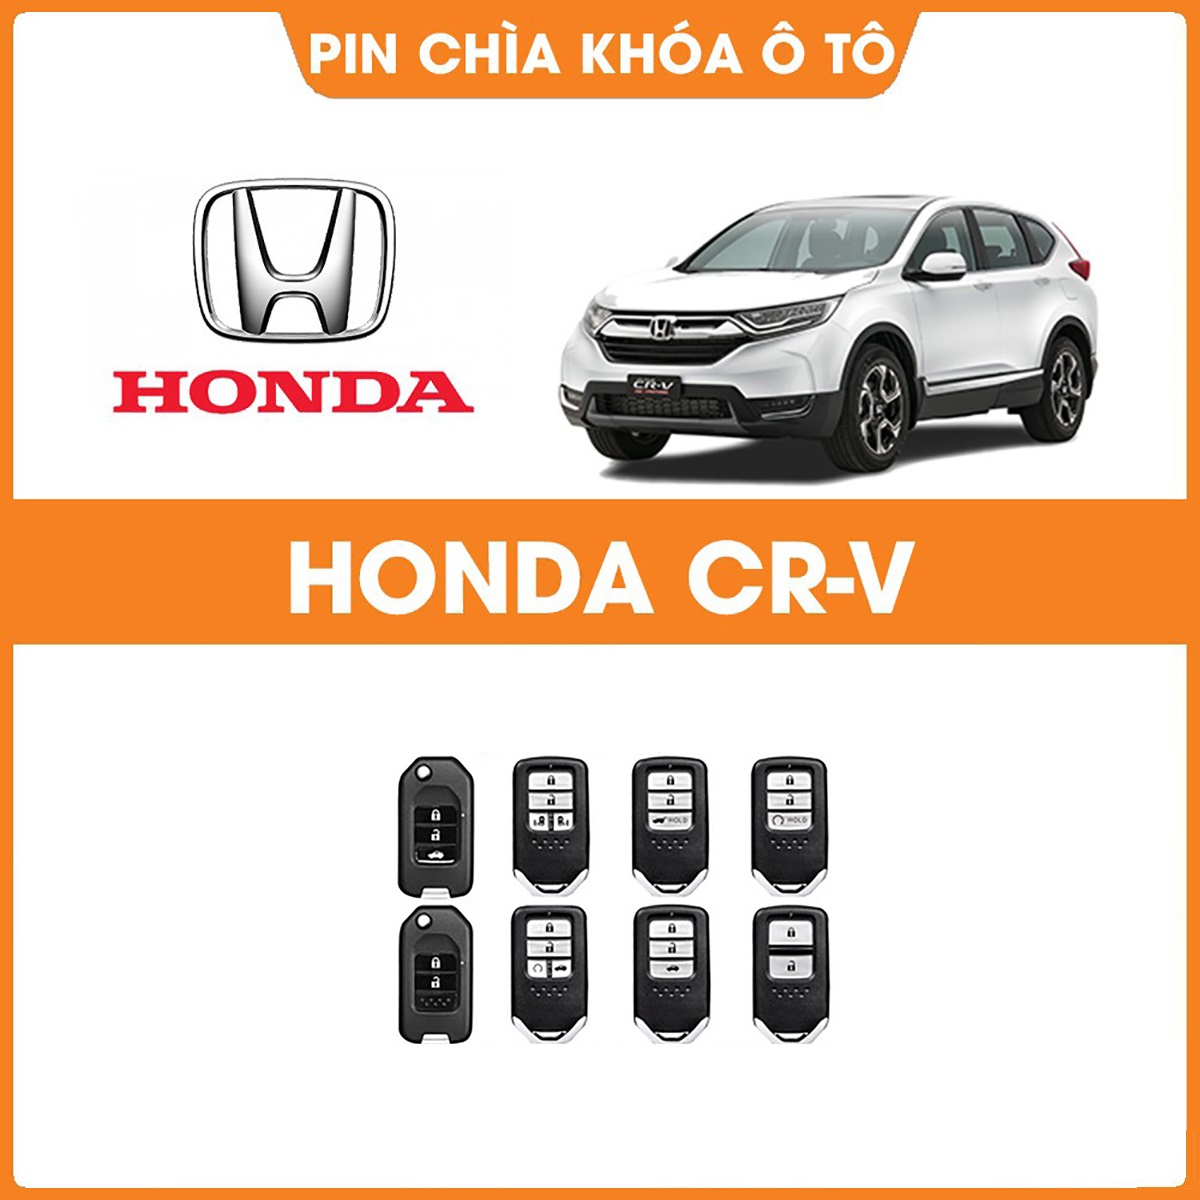 Cách thay pin chìa khóa ô tô Honda City, Civic, Accord, CRV